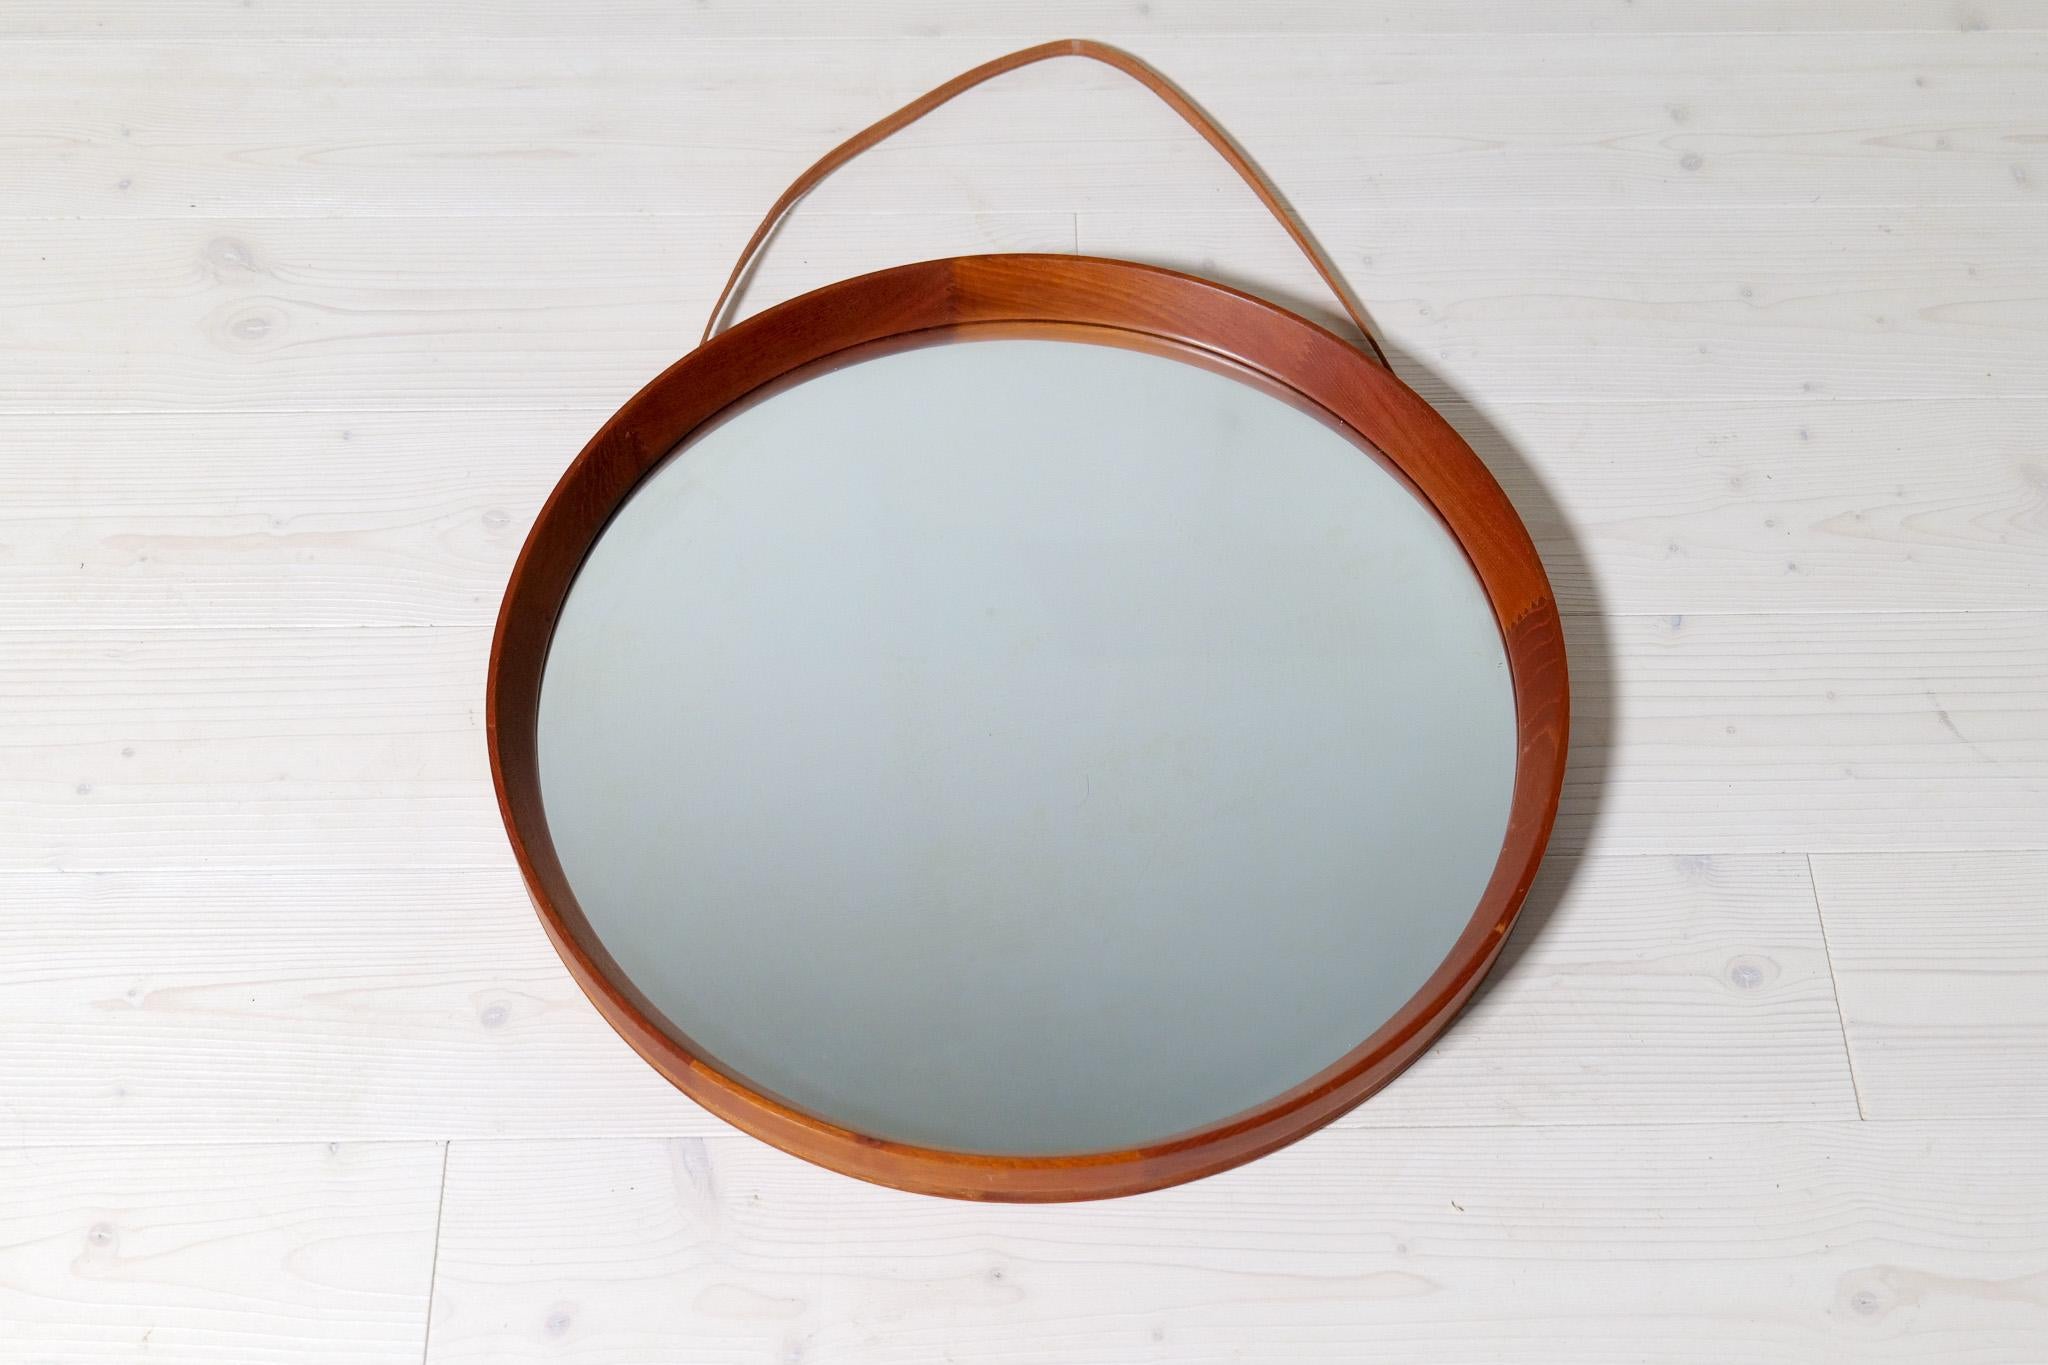 Midcentury Modern Round Mirror in Leather & Teak by Glas & Trä Hovmantorp Sweden For Sale 1